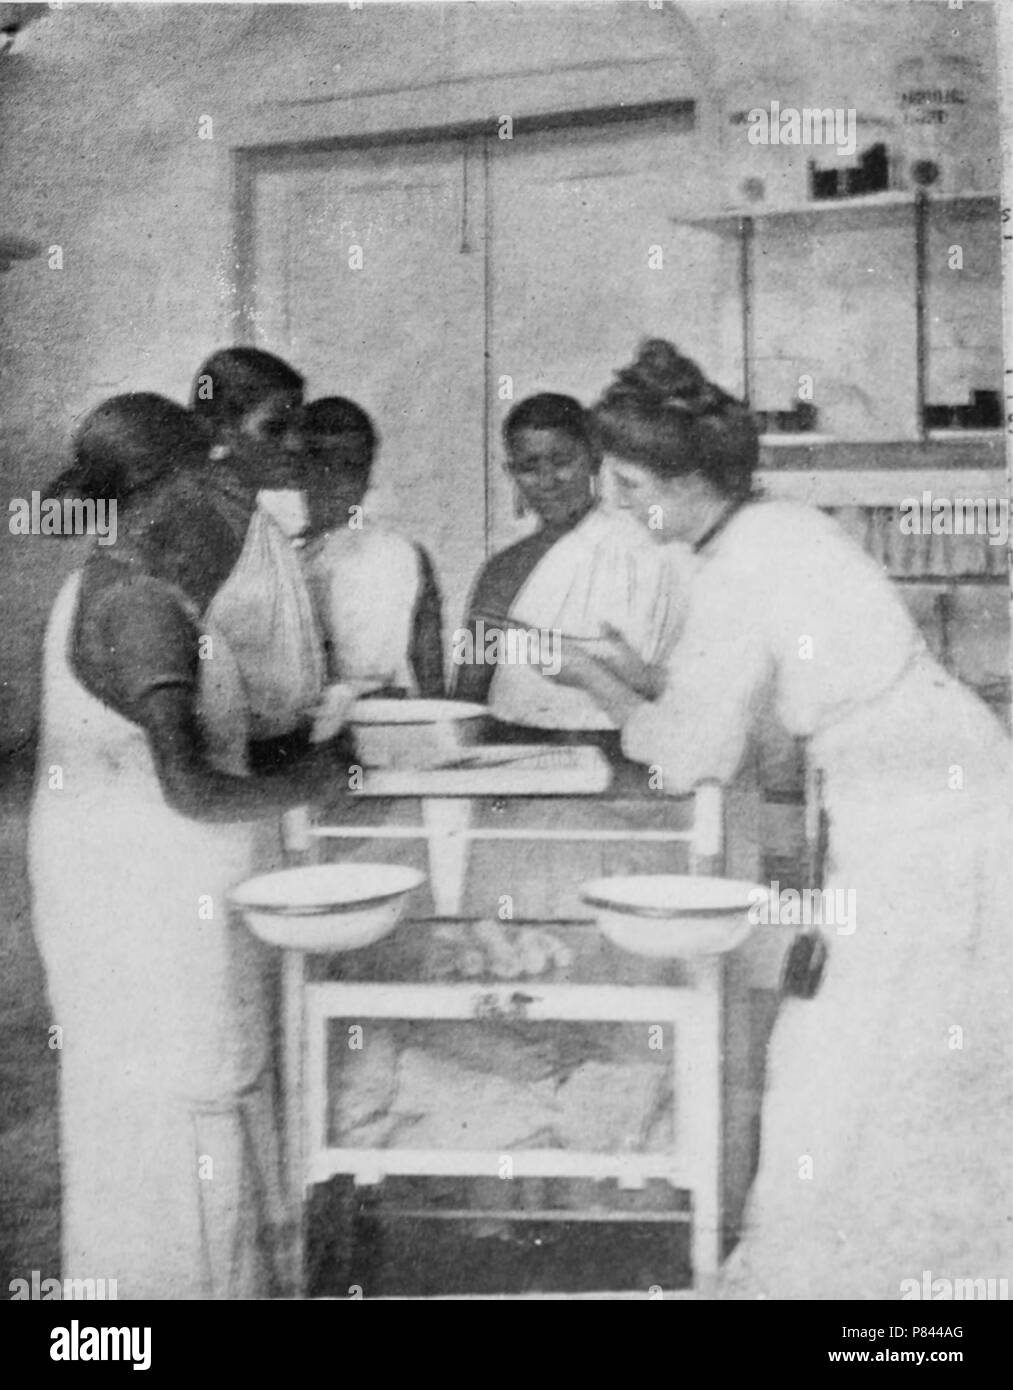 Photographie noir et blanc représentant Mlle moi McDonnell, portant une robe victorienne et penché sur une table tout en parlant avec un groupe d'infirmières locales portant des saris, probablement photographié à l'ICS Nursing College, dans Neyyoor, Tamil Nadu, Inde, 1912. Avec la permission de Internet Archive. () Banque D'Images